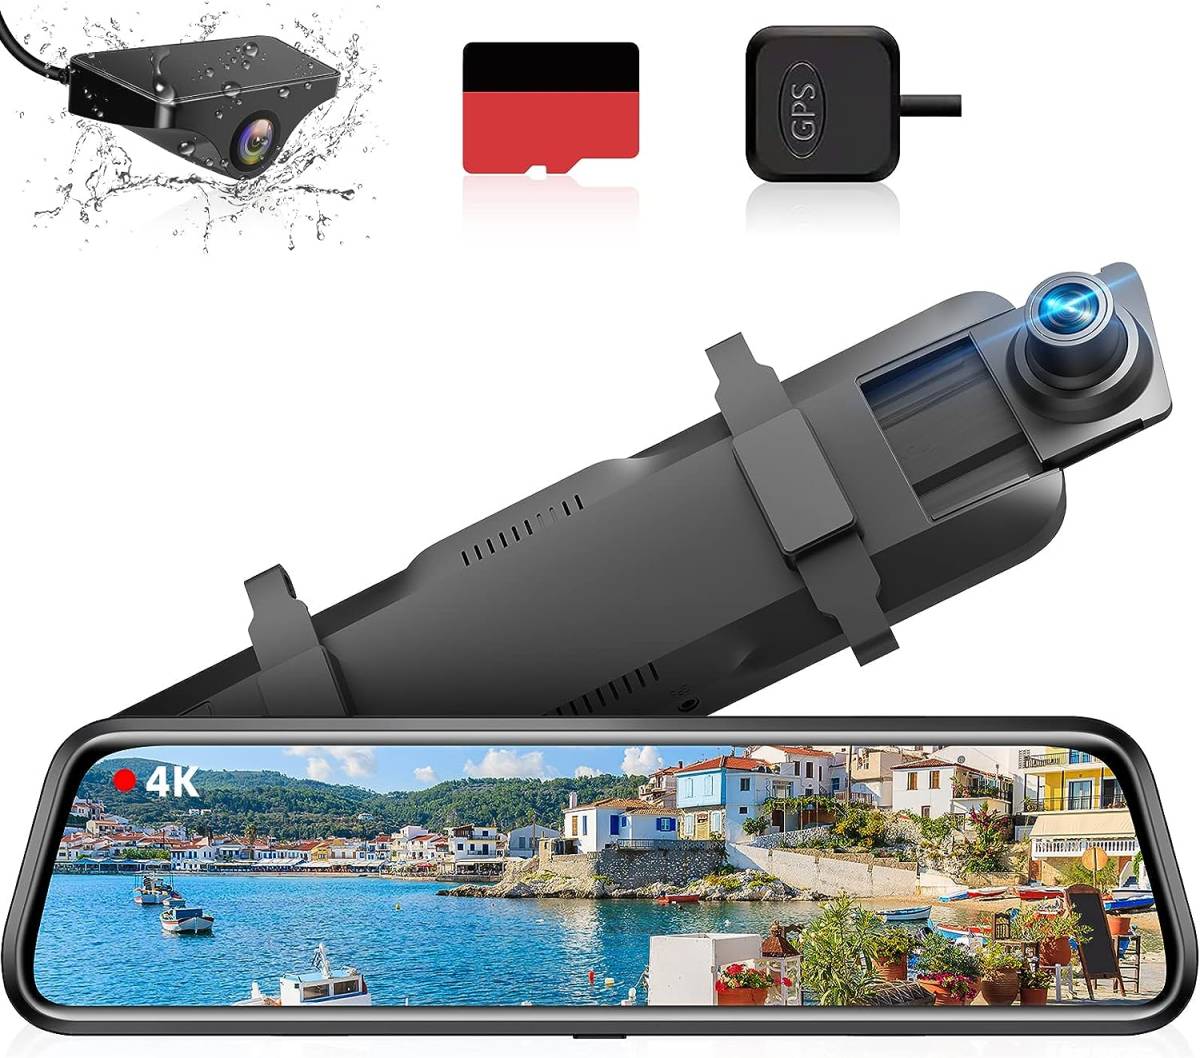 4K ..ドライブレコーダー ミラー型 【伸縮式カメラ】【64GB高速SDカード付き】4K解像度 10インチ 右カメラ GPS搭載 防水構造リアカメラ